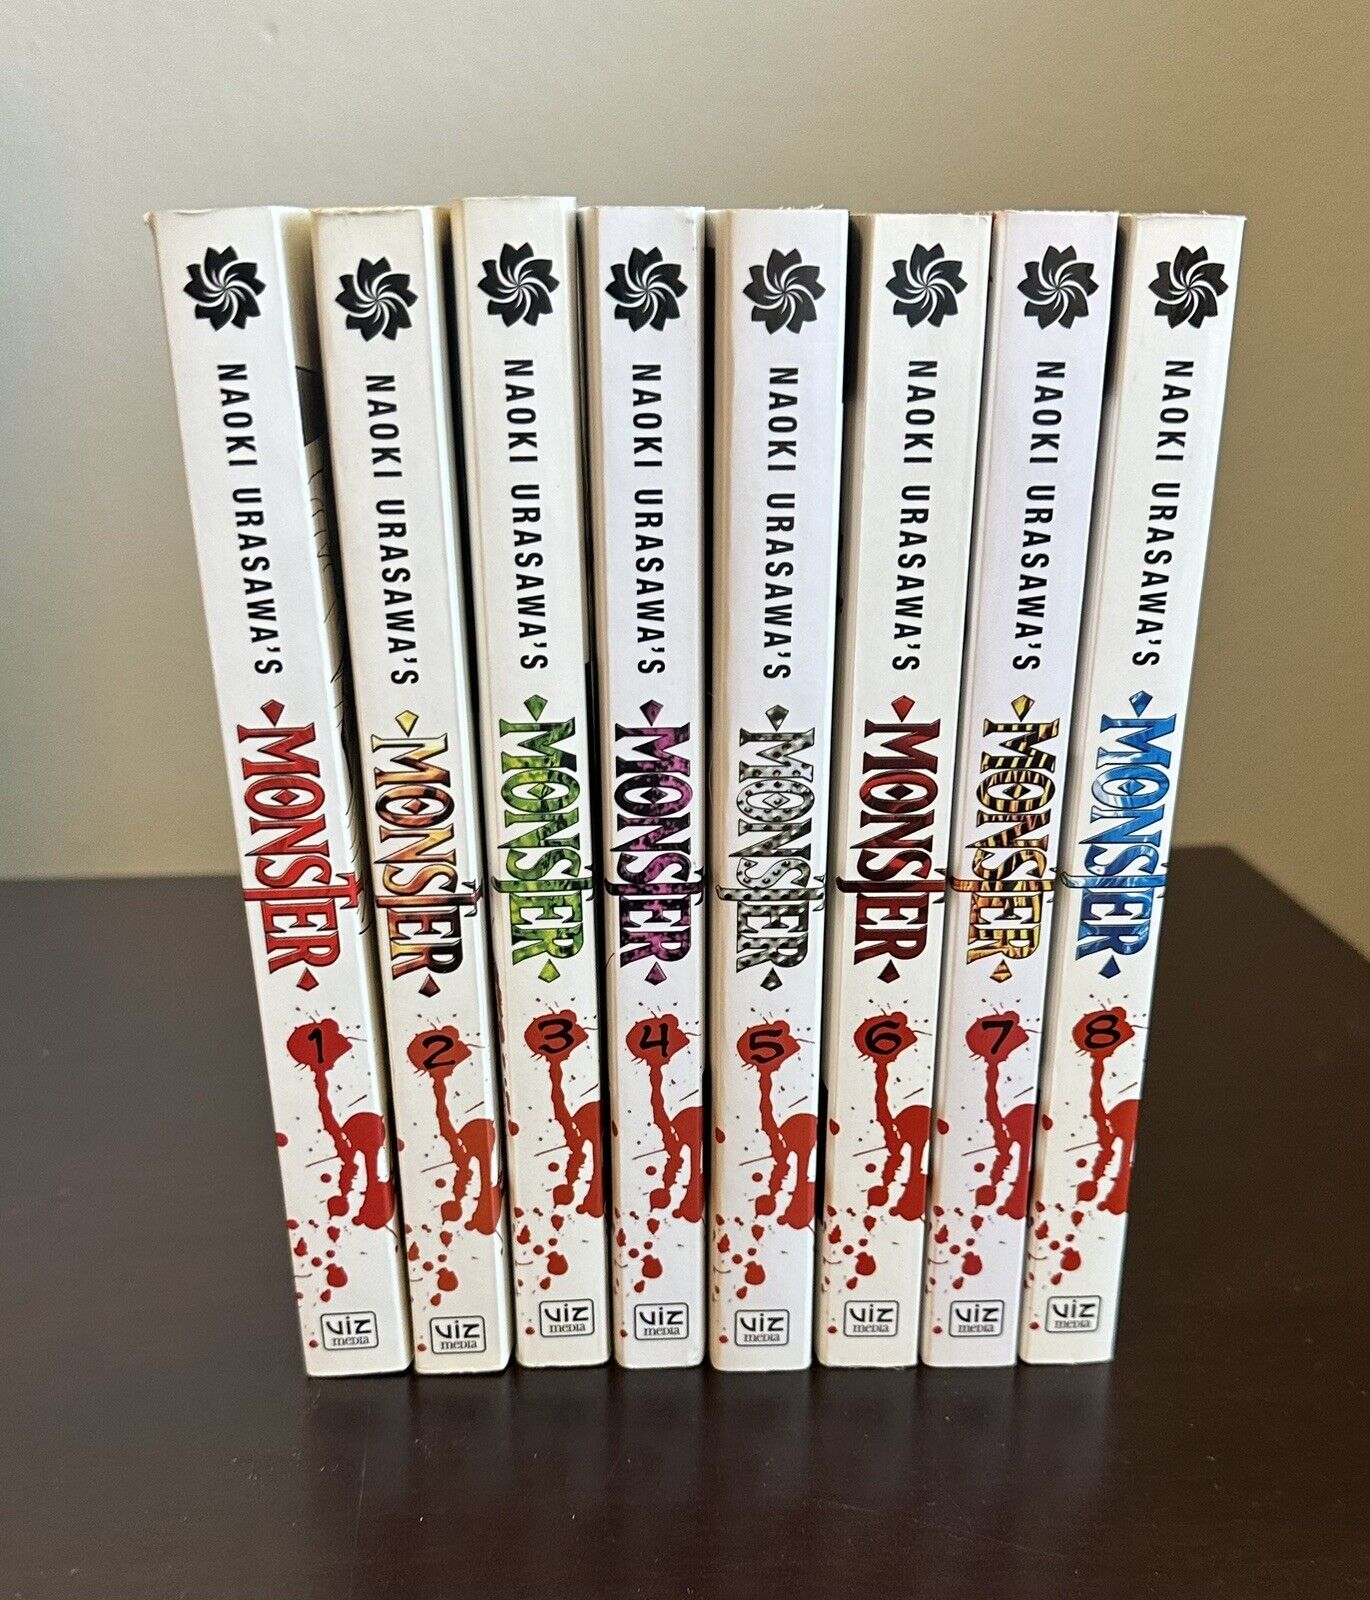 Monster singles manga volumes 1-8